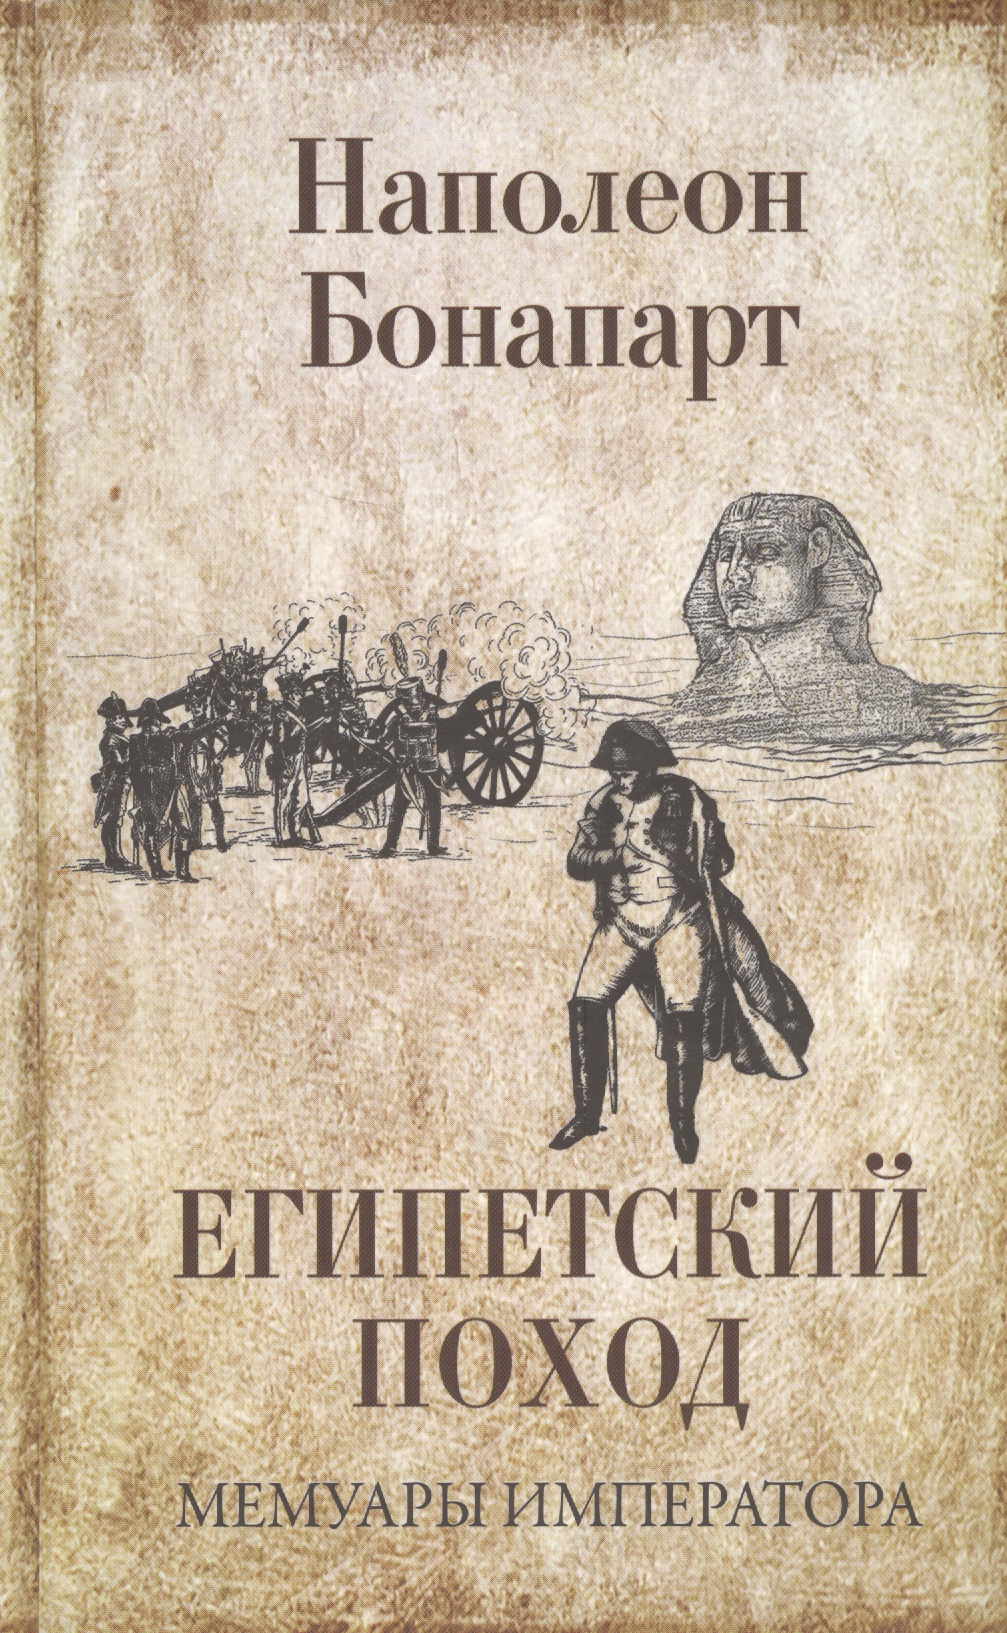 Бонапарт Наполеон Египетский поход / Мемуары императора